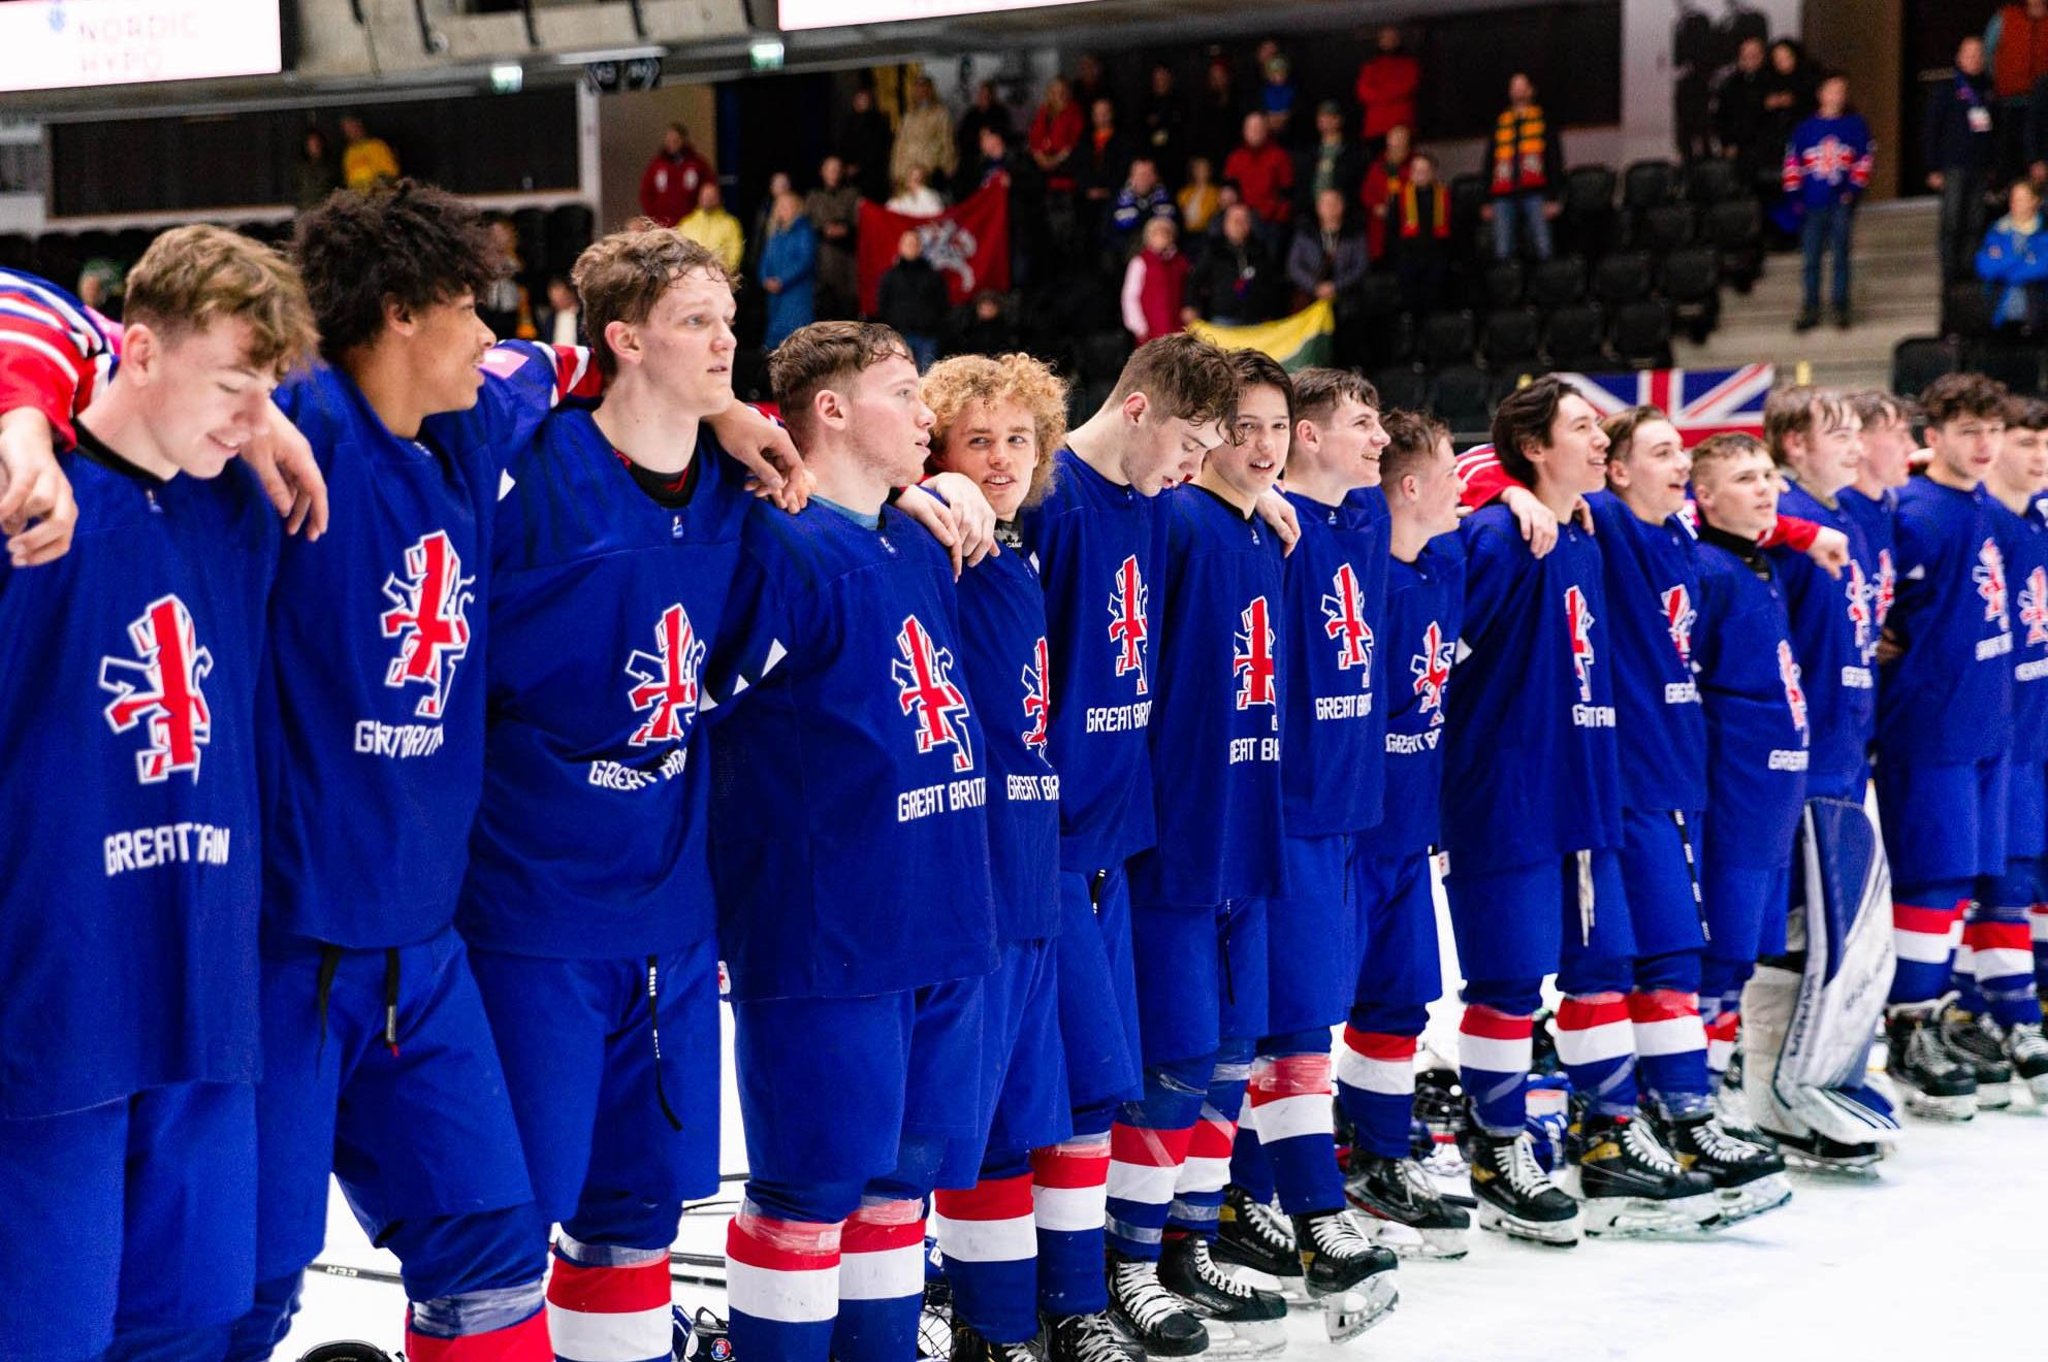 Estijoje IIHF pasaulio čempionate bronzos medalius iškovoję Didžiosios Britanijos žaidėjai iki 18 metų buvo pagirti.